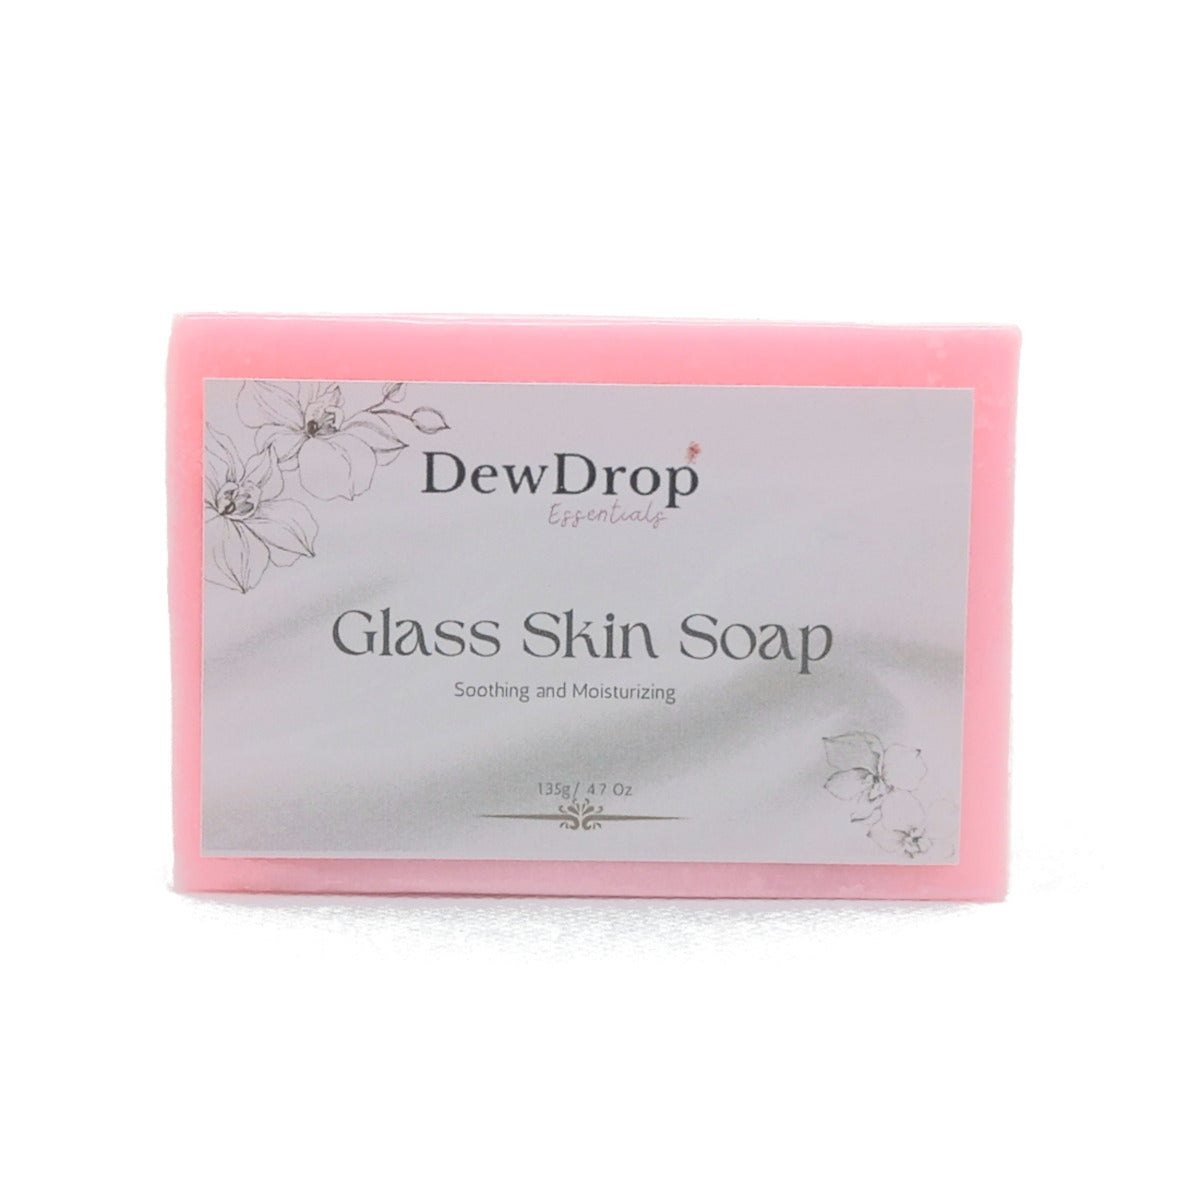 DewDrop Glass Skin Set in Box | Dewmart